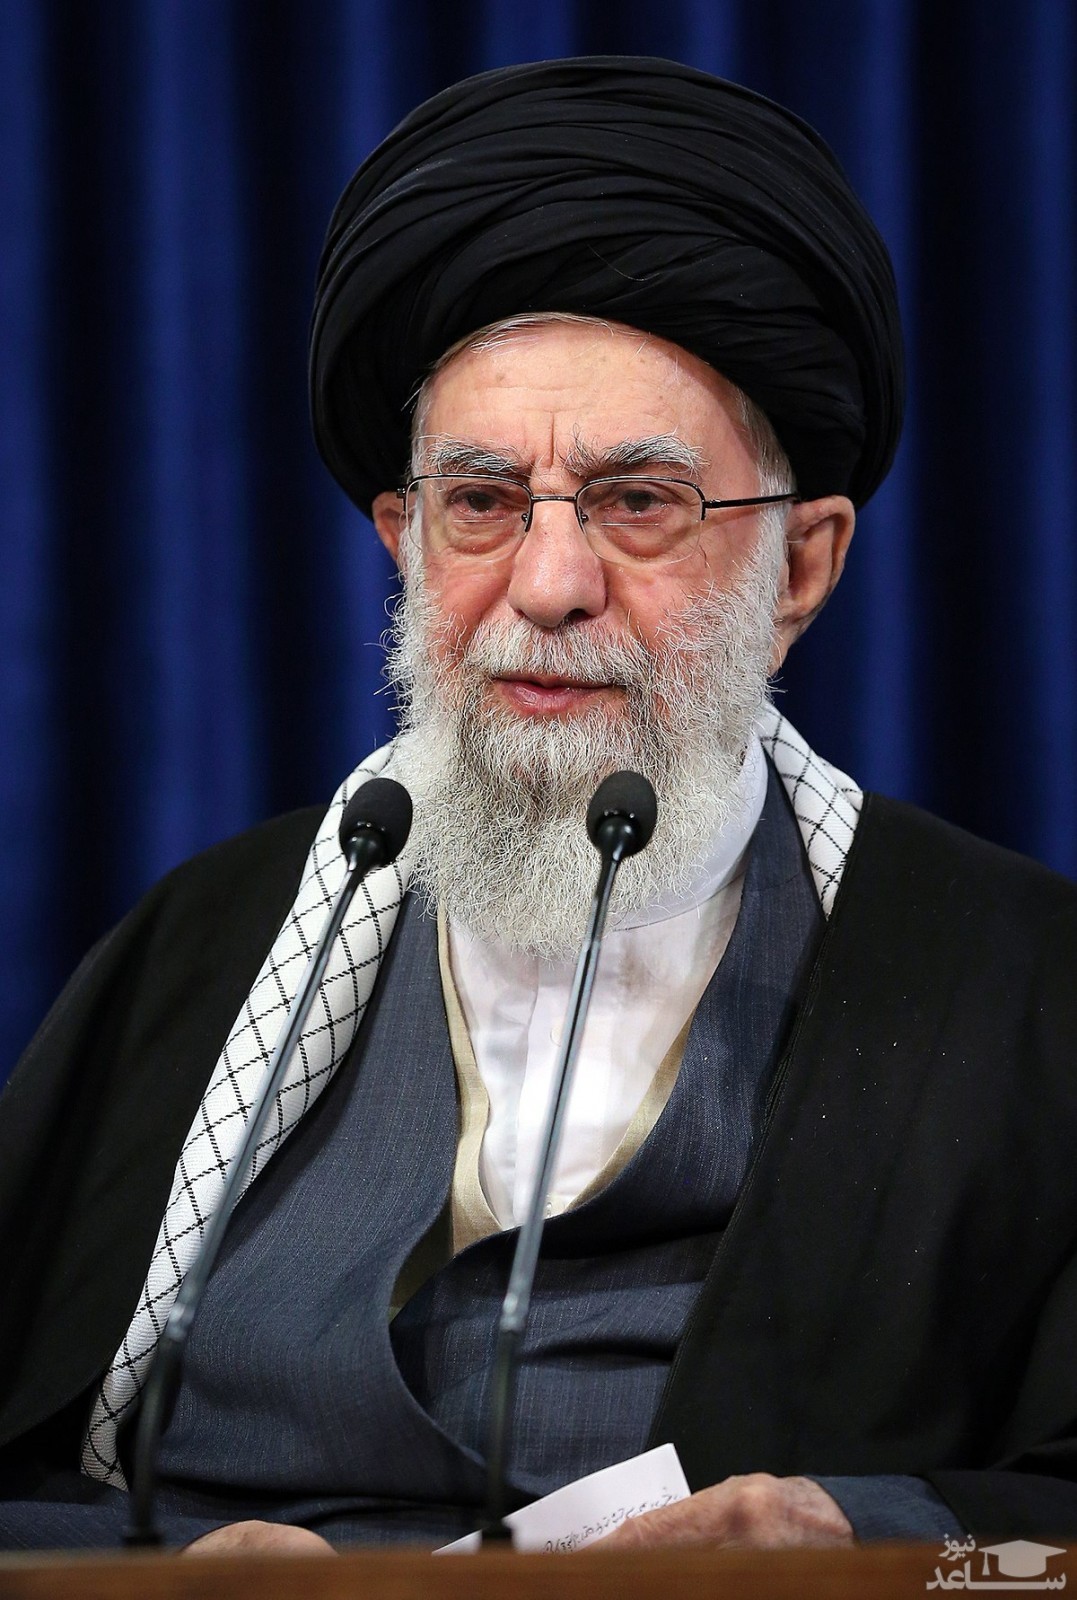 بیانات رهبر معظم انقلاب در سالگرد رحلت امام خمینی (ره) در ساعت 11 آغاز خواهد شد